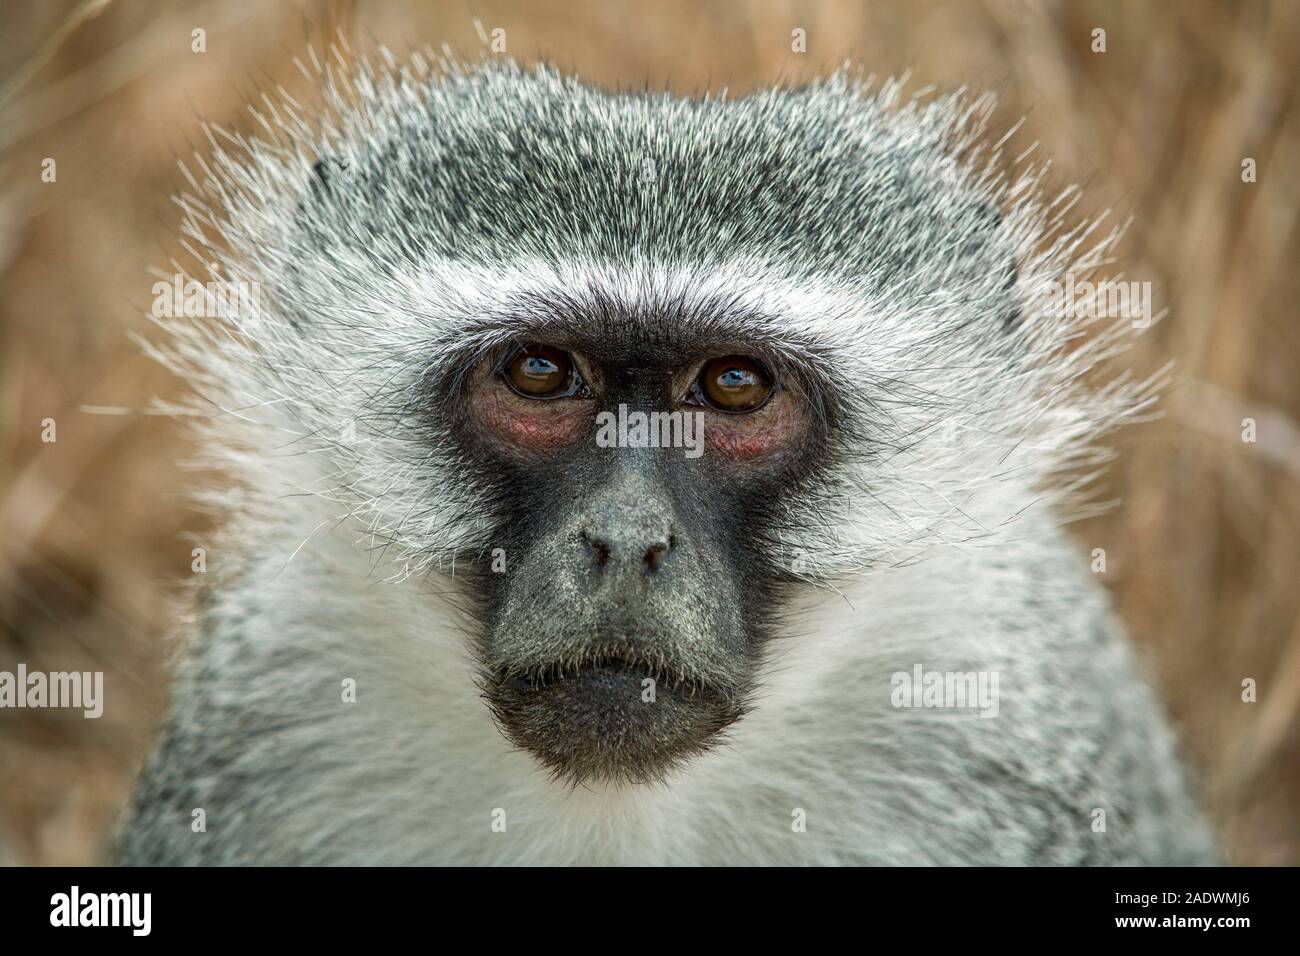 Meerkatze in Südafrika. Auge in Auge mit einem grünen Affen Gesicht. Herzlichen Glückwunsch und viel Torte einer Meerkatze. Blickkontakt mit einem Affen. Südafrika. Stockfoto